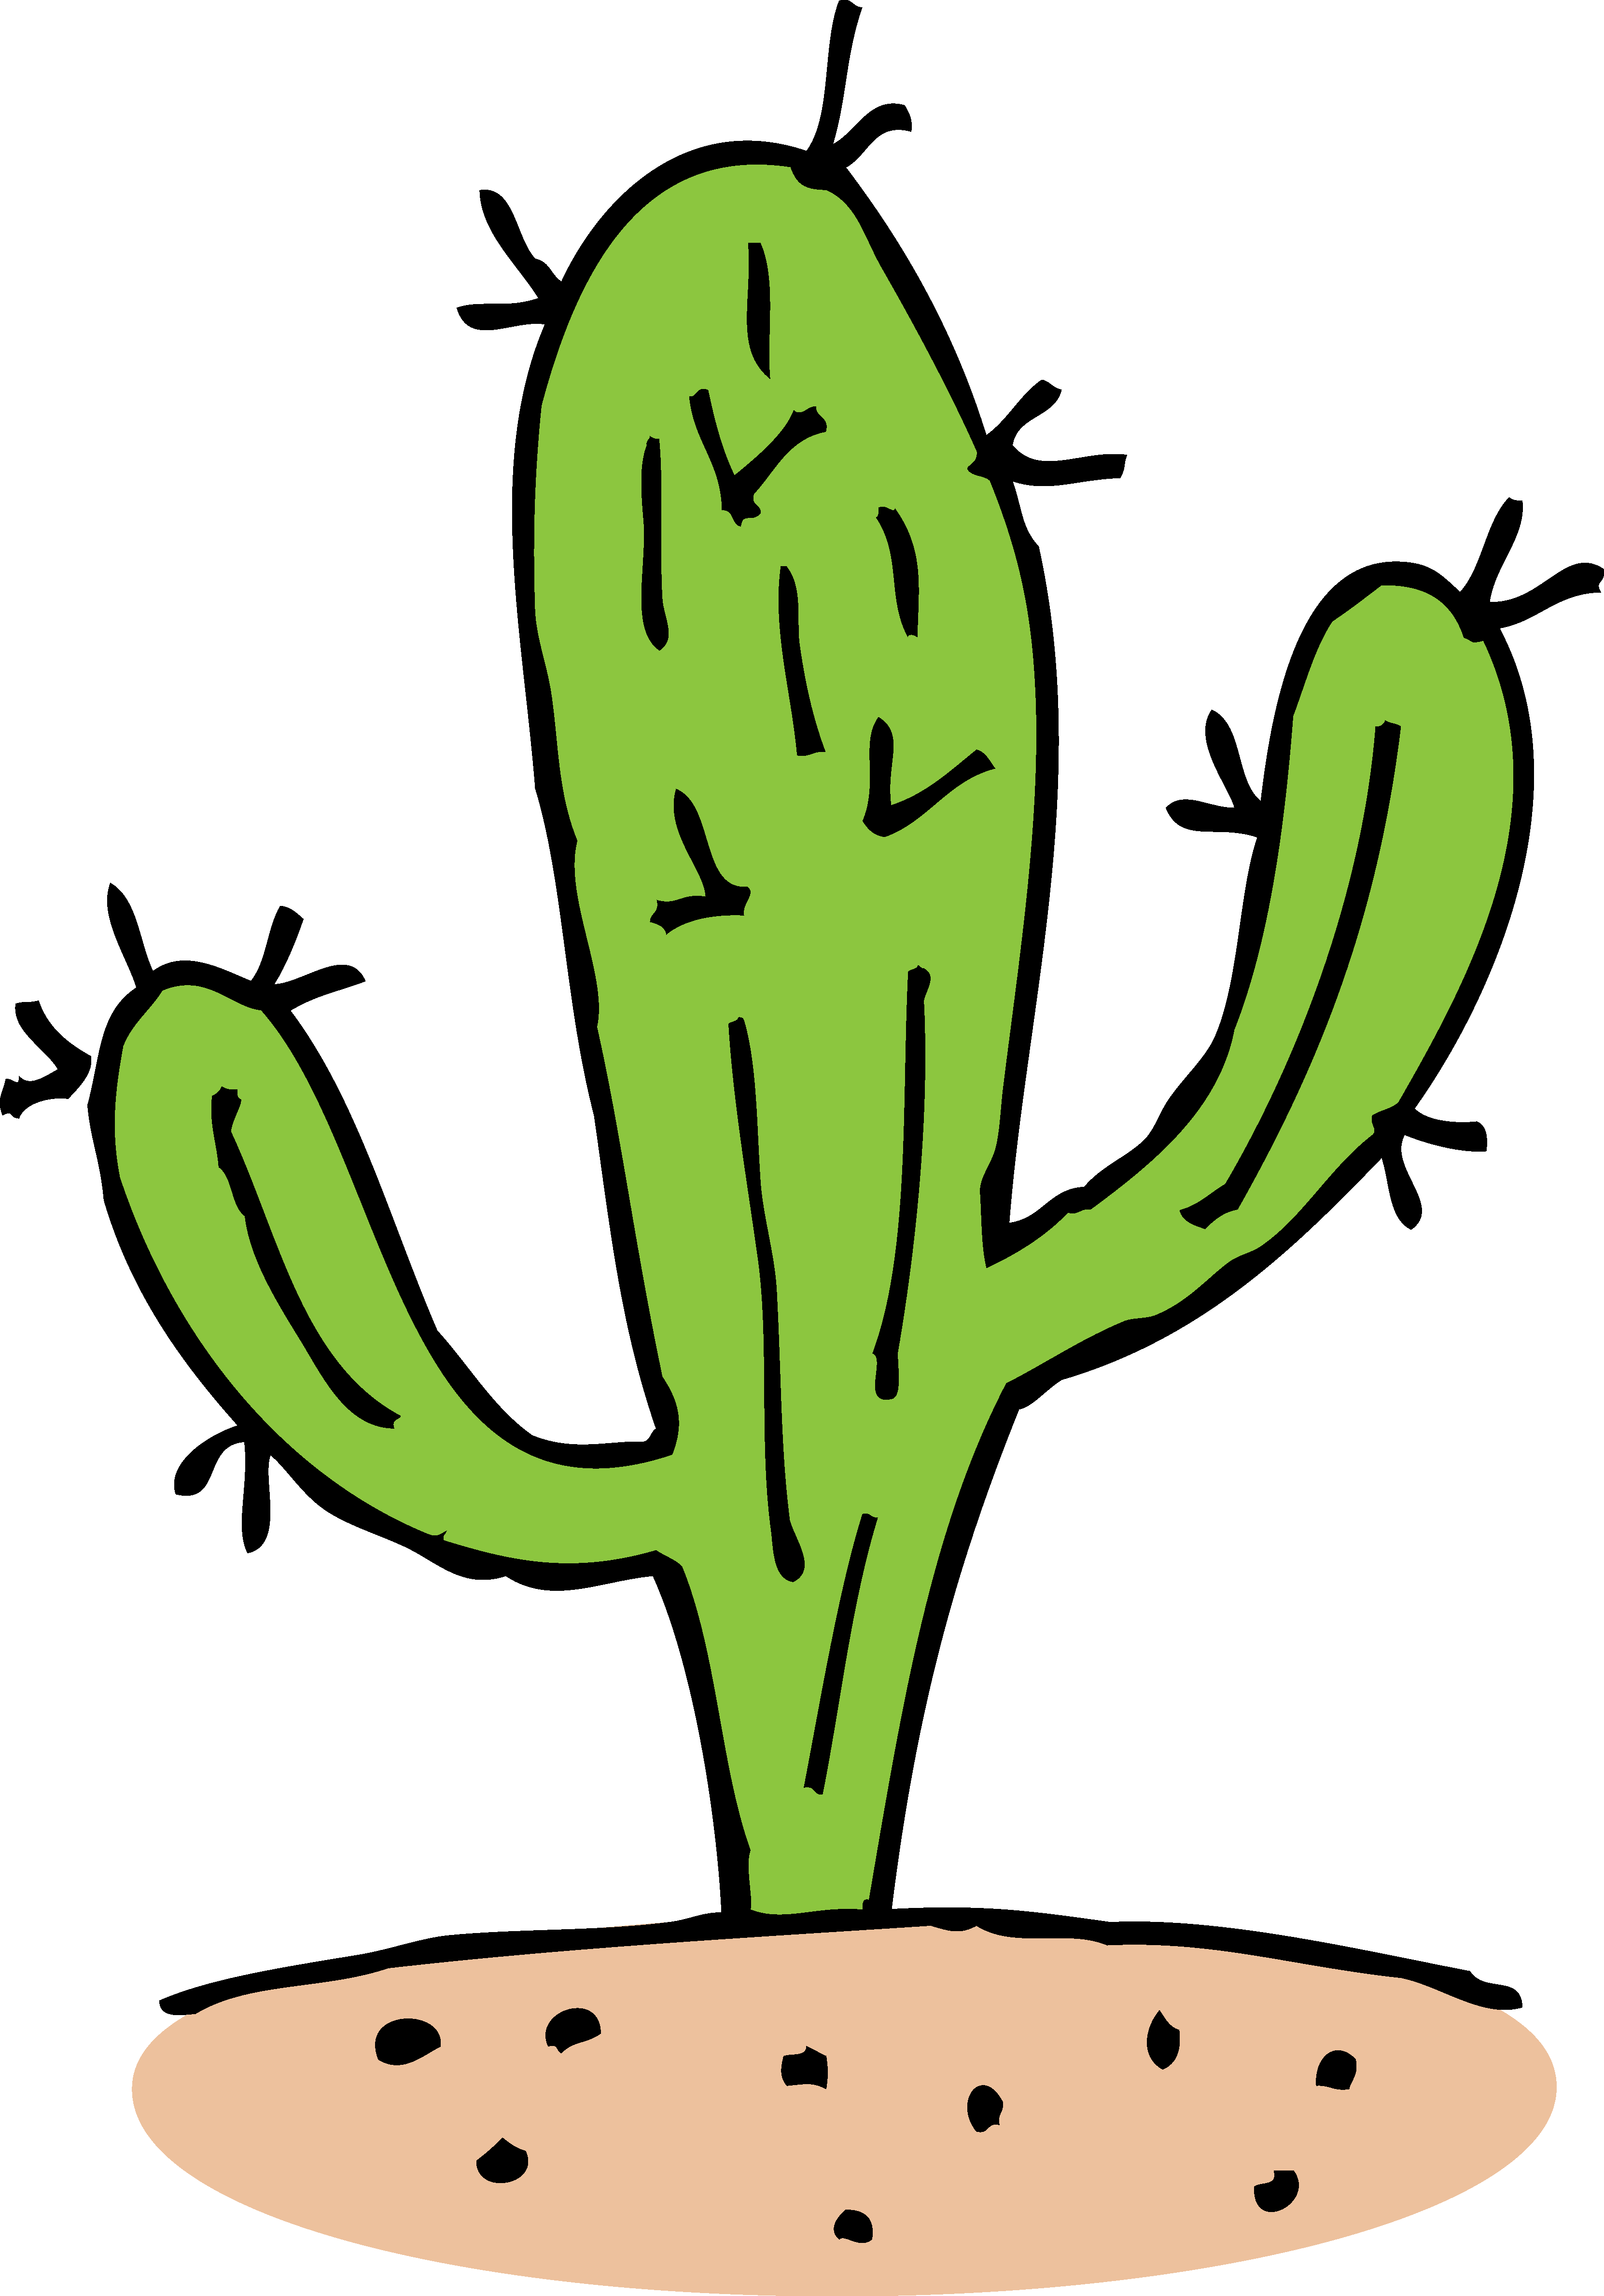 Cactus images clip art